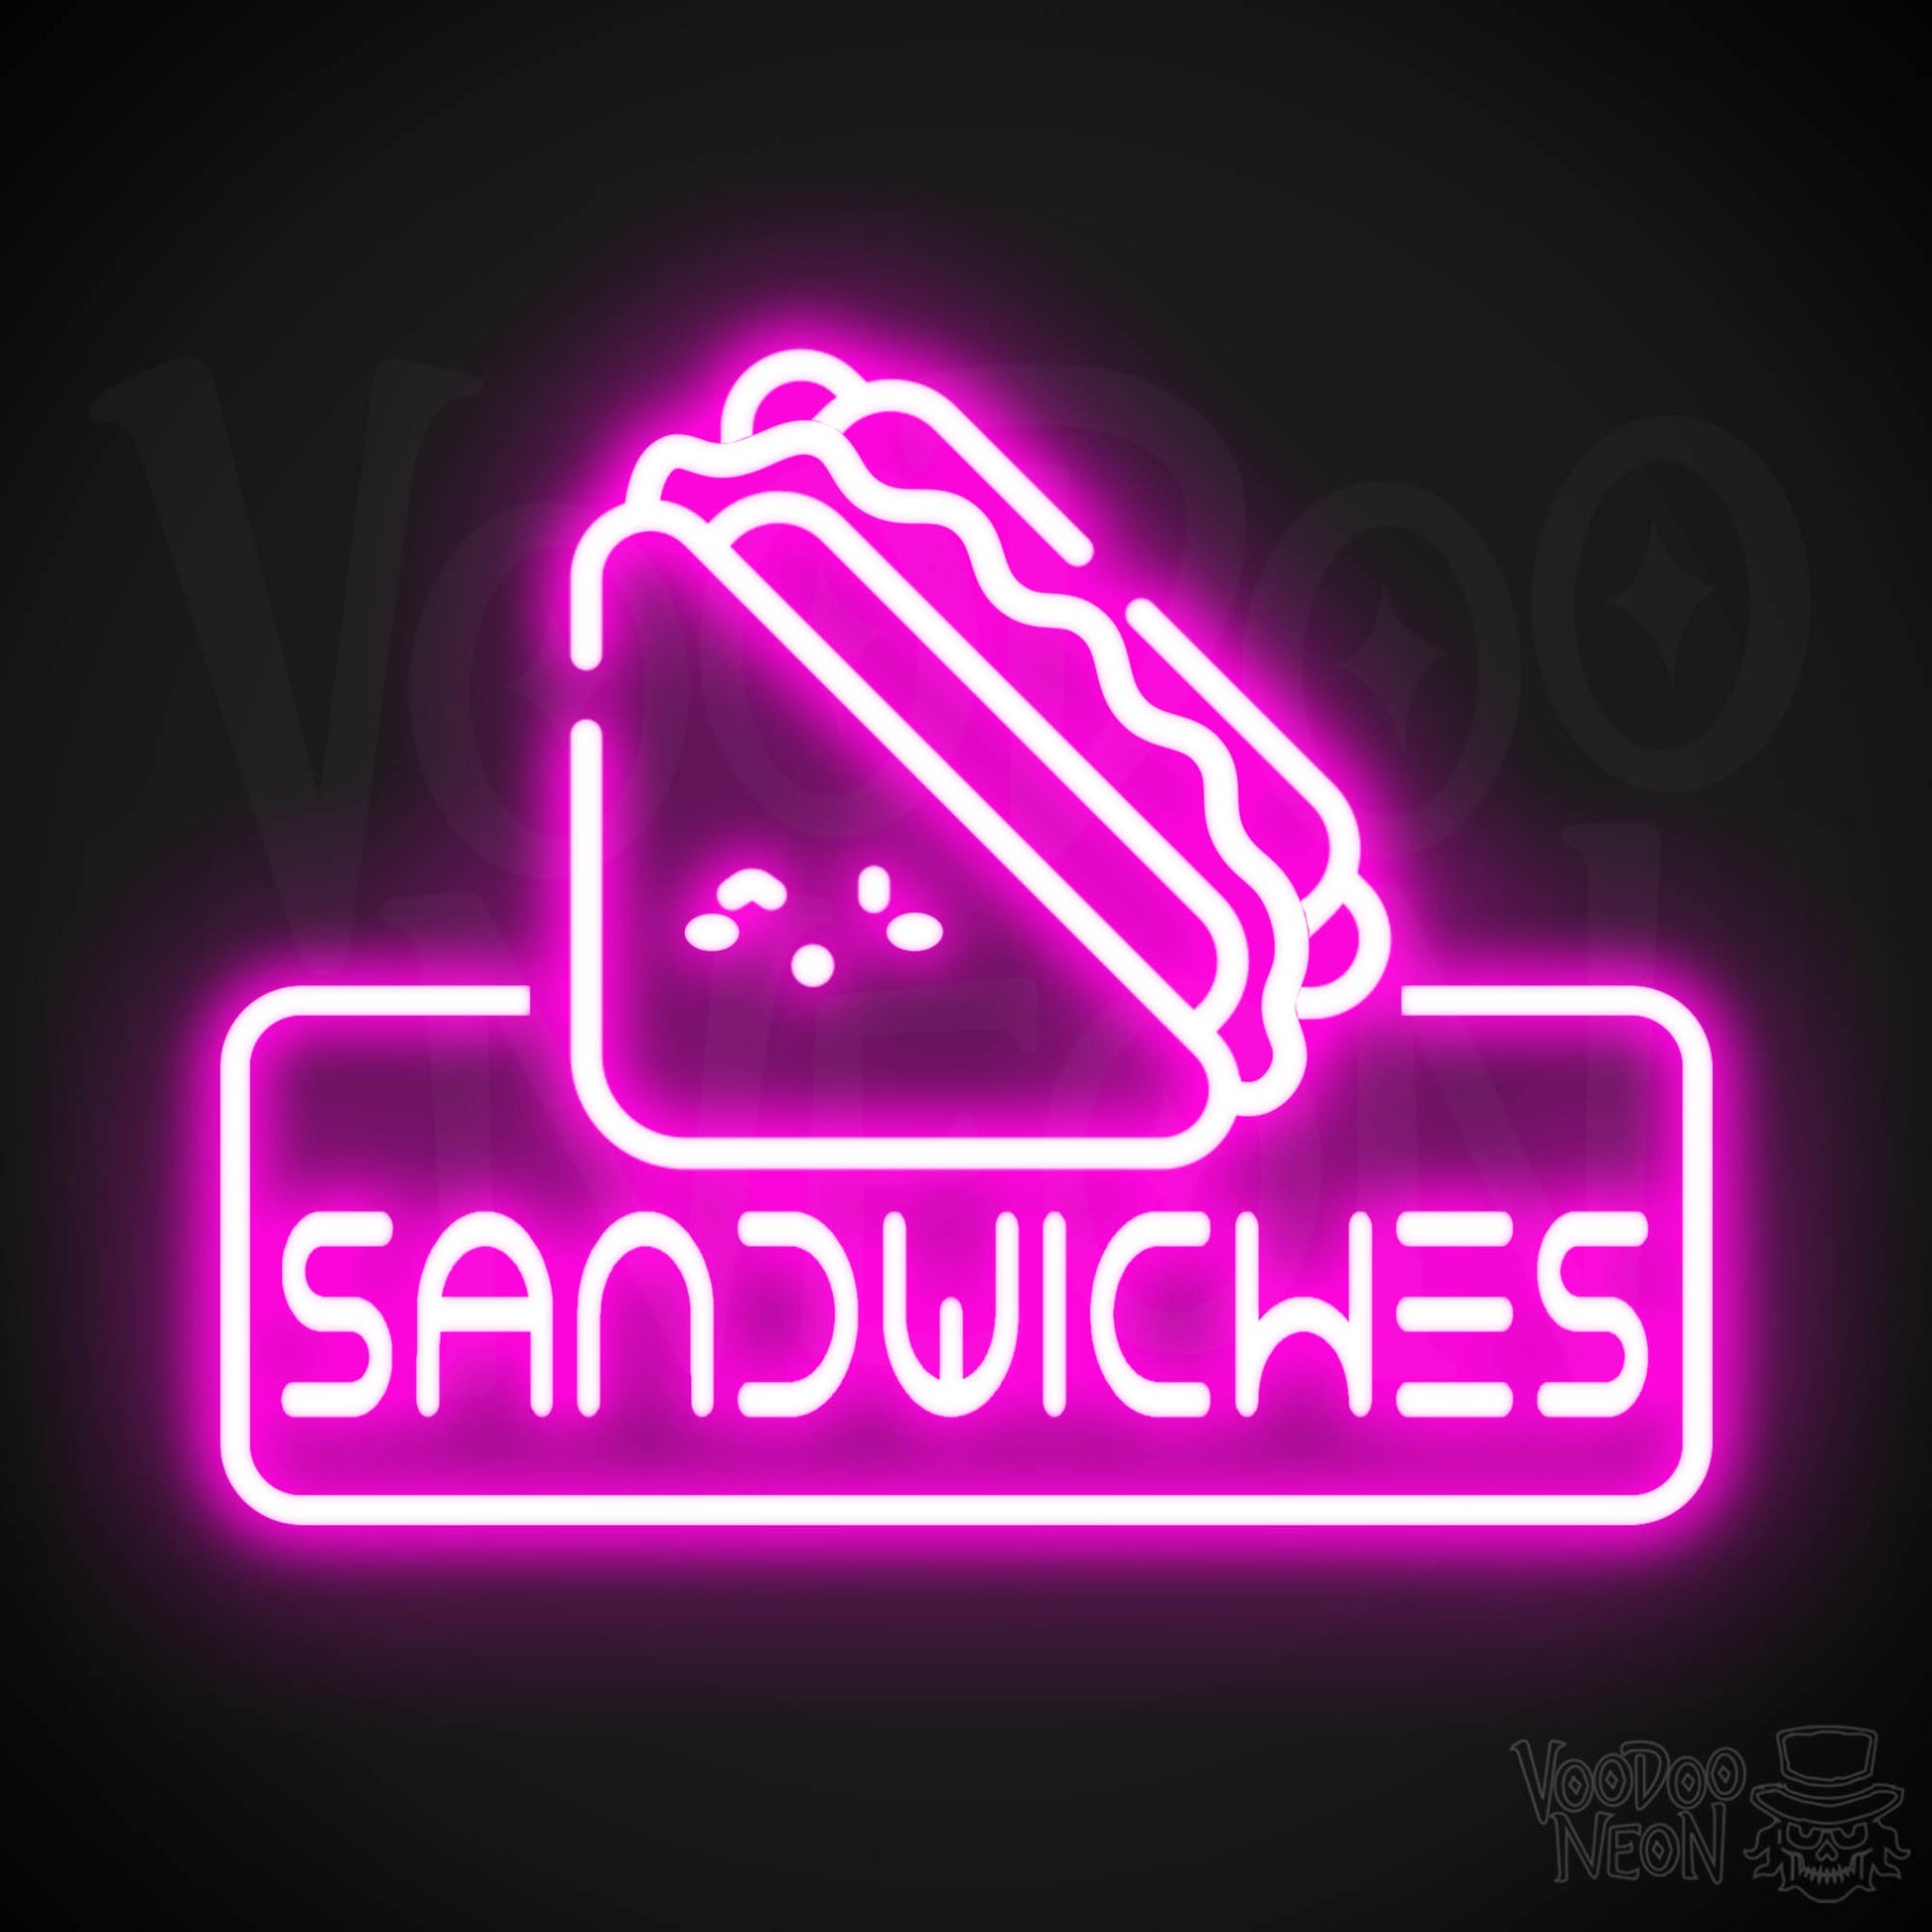 Neon Sandwiches Sign - Sandwich Neon Sign - Neon Sandwich Shop Sign - Color Pink